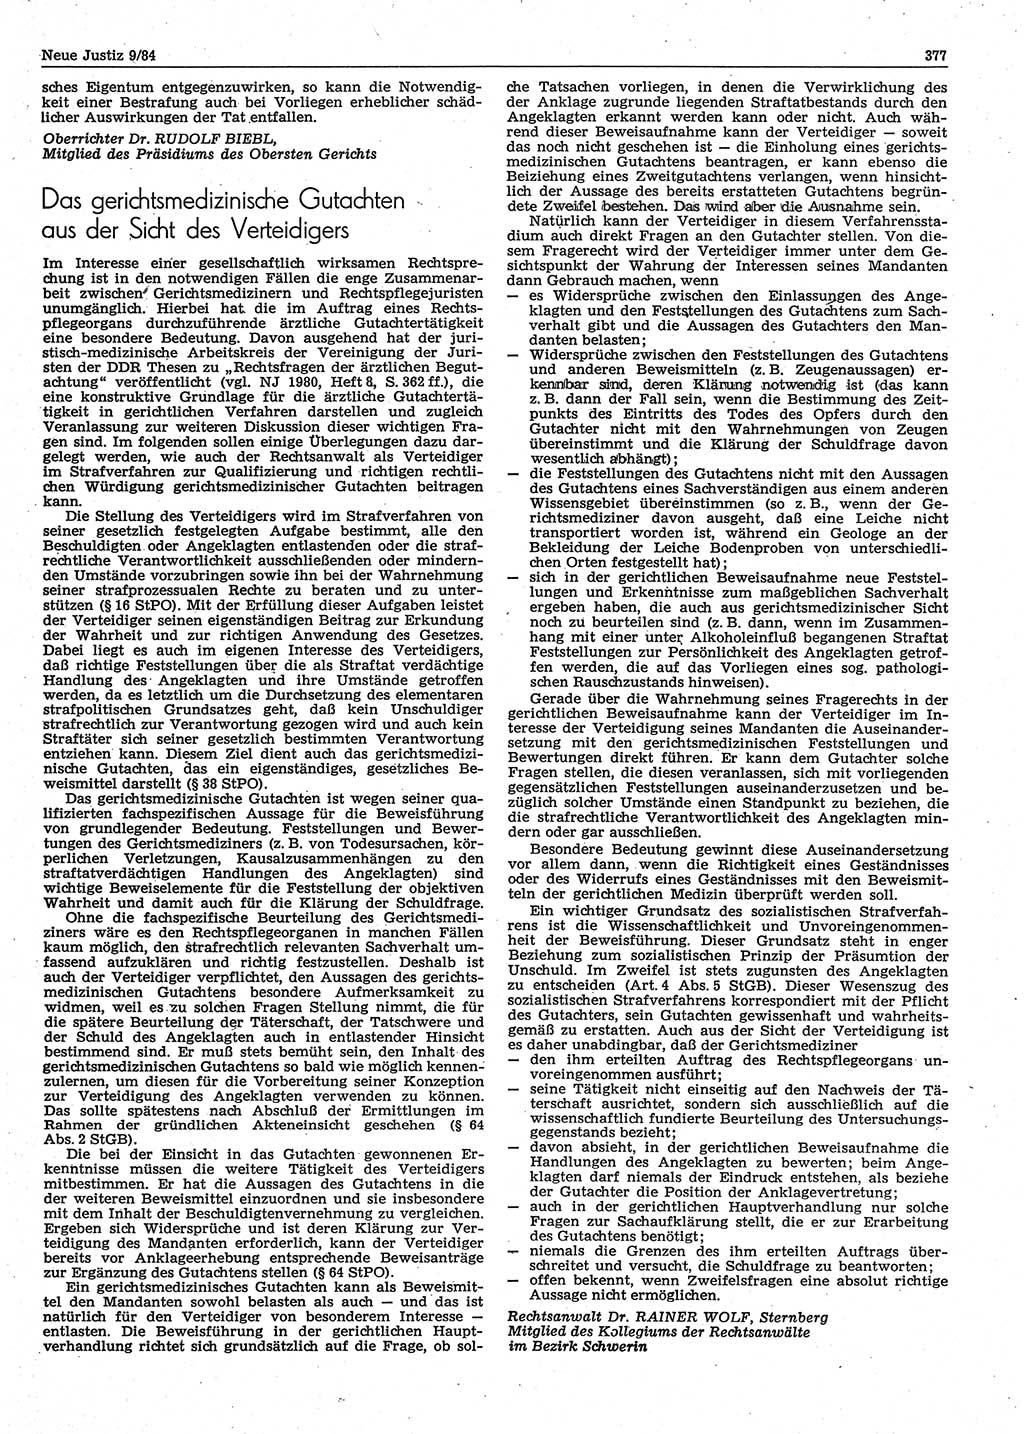 Neue Justiz (NJ), Zeitschrift für sozialistisches Recht und Gesetzlichkeit [Deutsche Demokratische Republik (DDR)], 38. Jahrgang 1984, Seite 377 (NJ DDR 1984, S. 377)